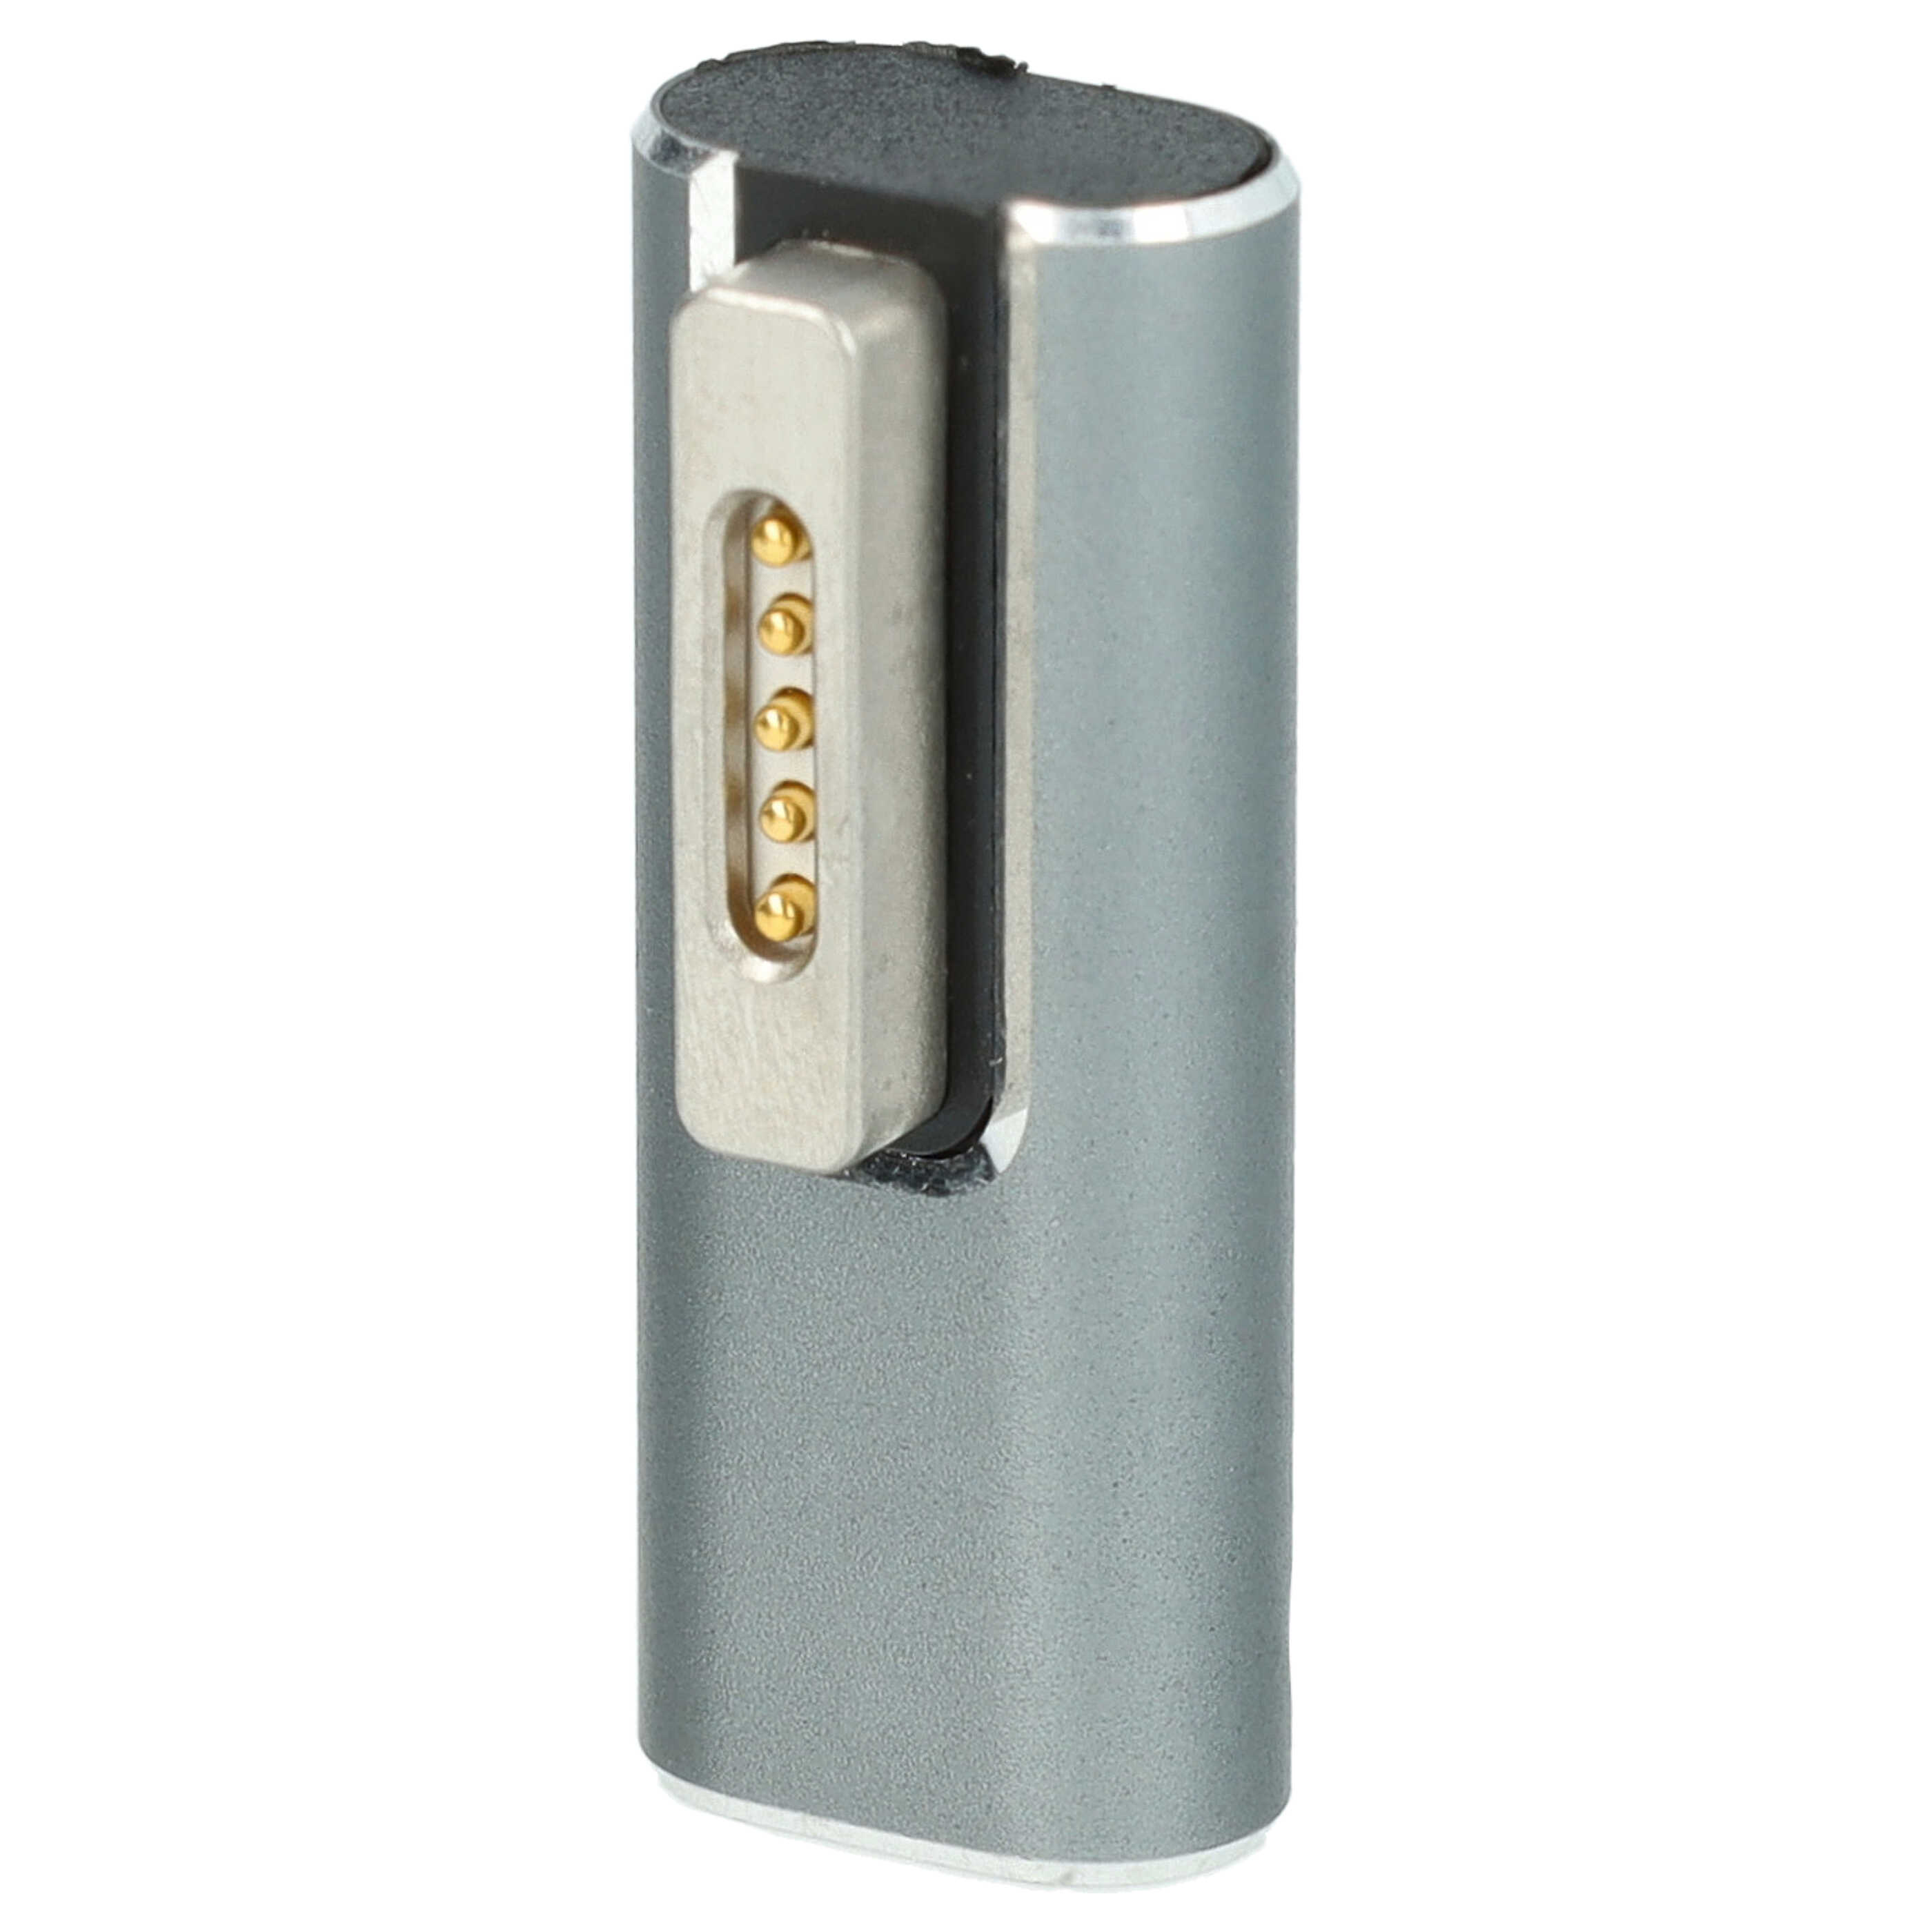  adattatore USB tipo C a MagSafe 2 per notebook Apple MacBook Air - min. 20 W